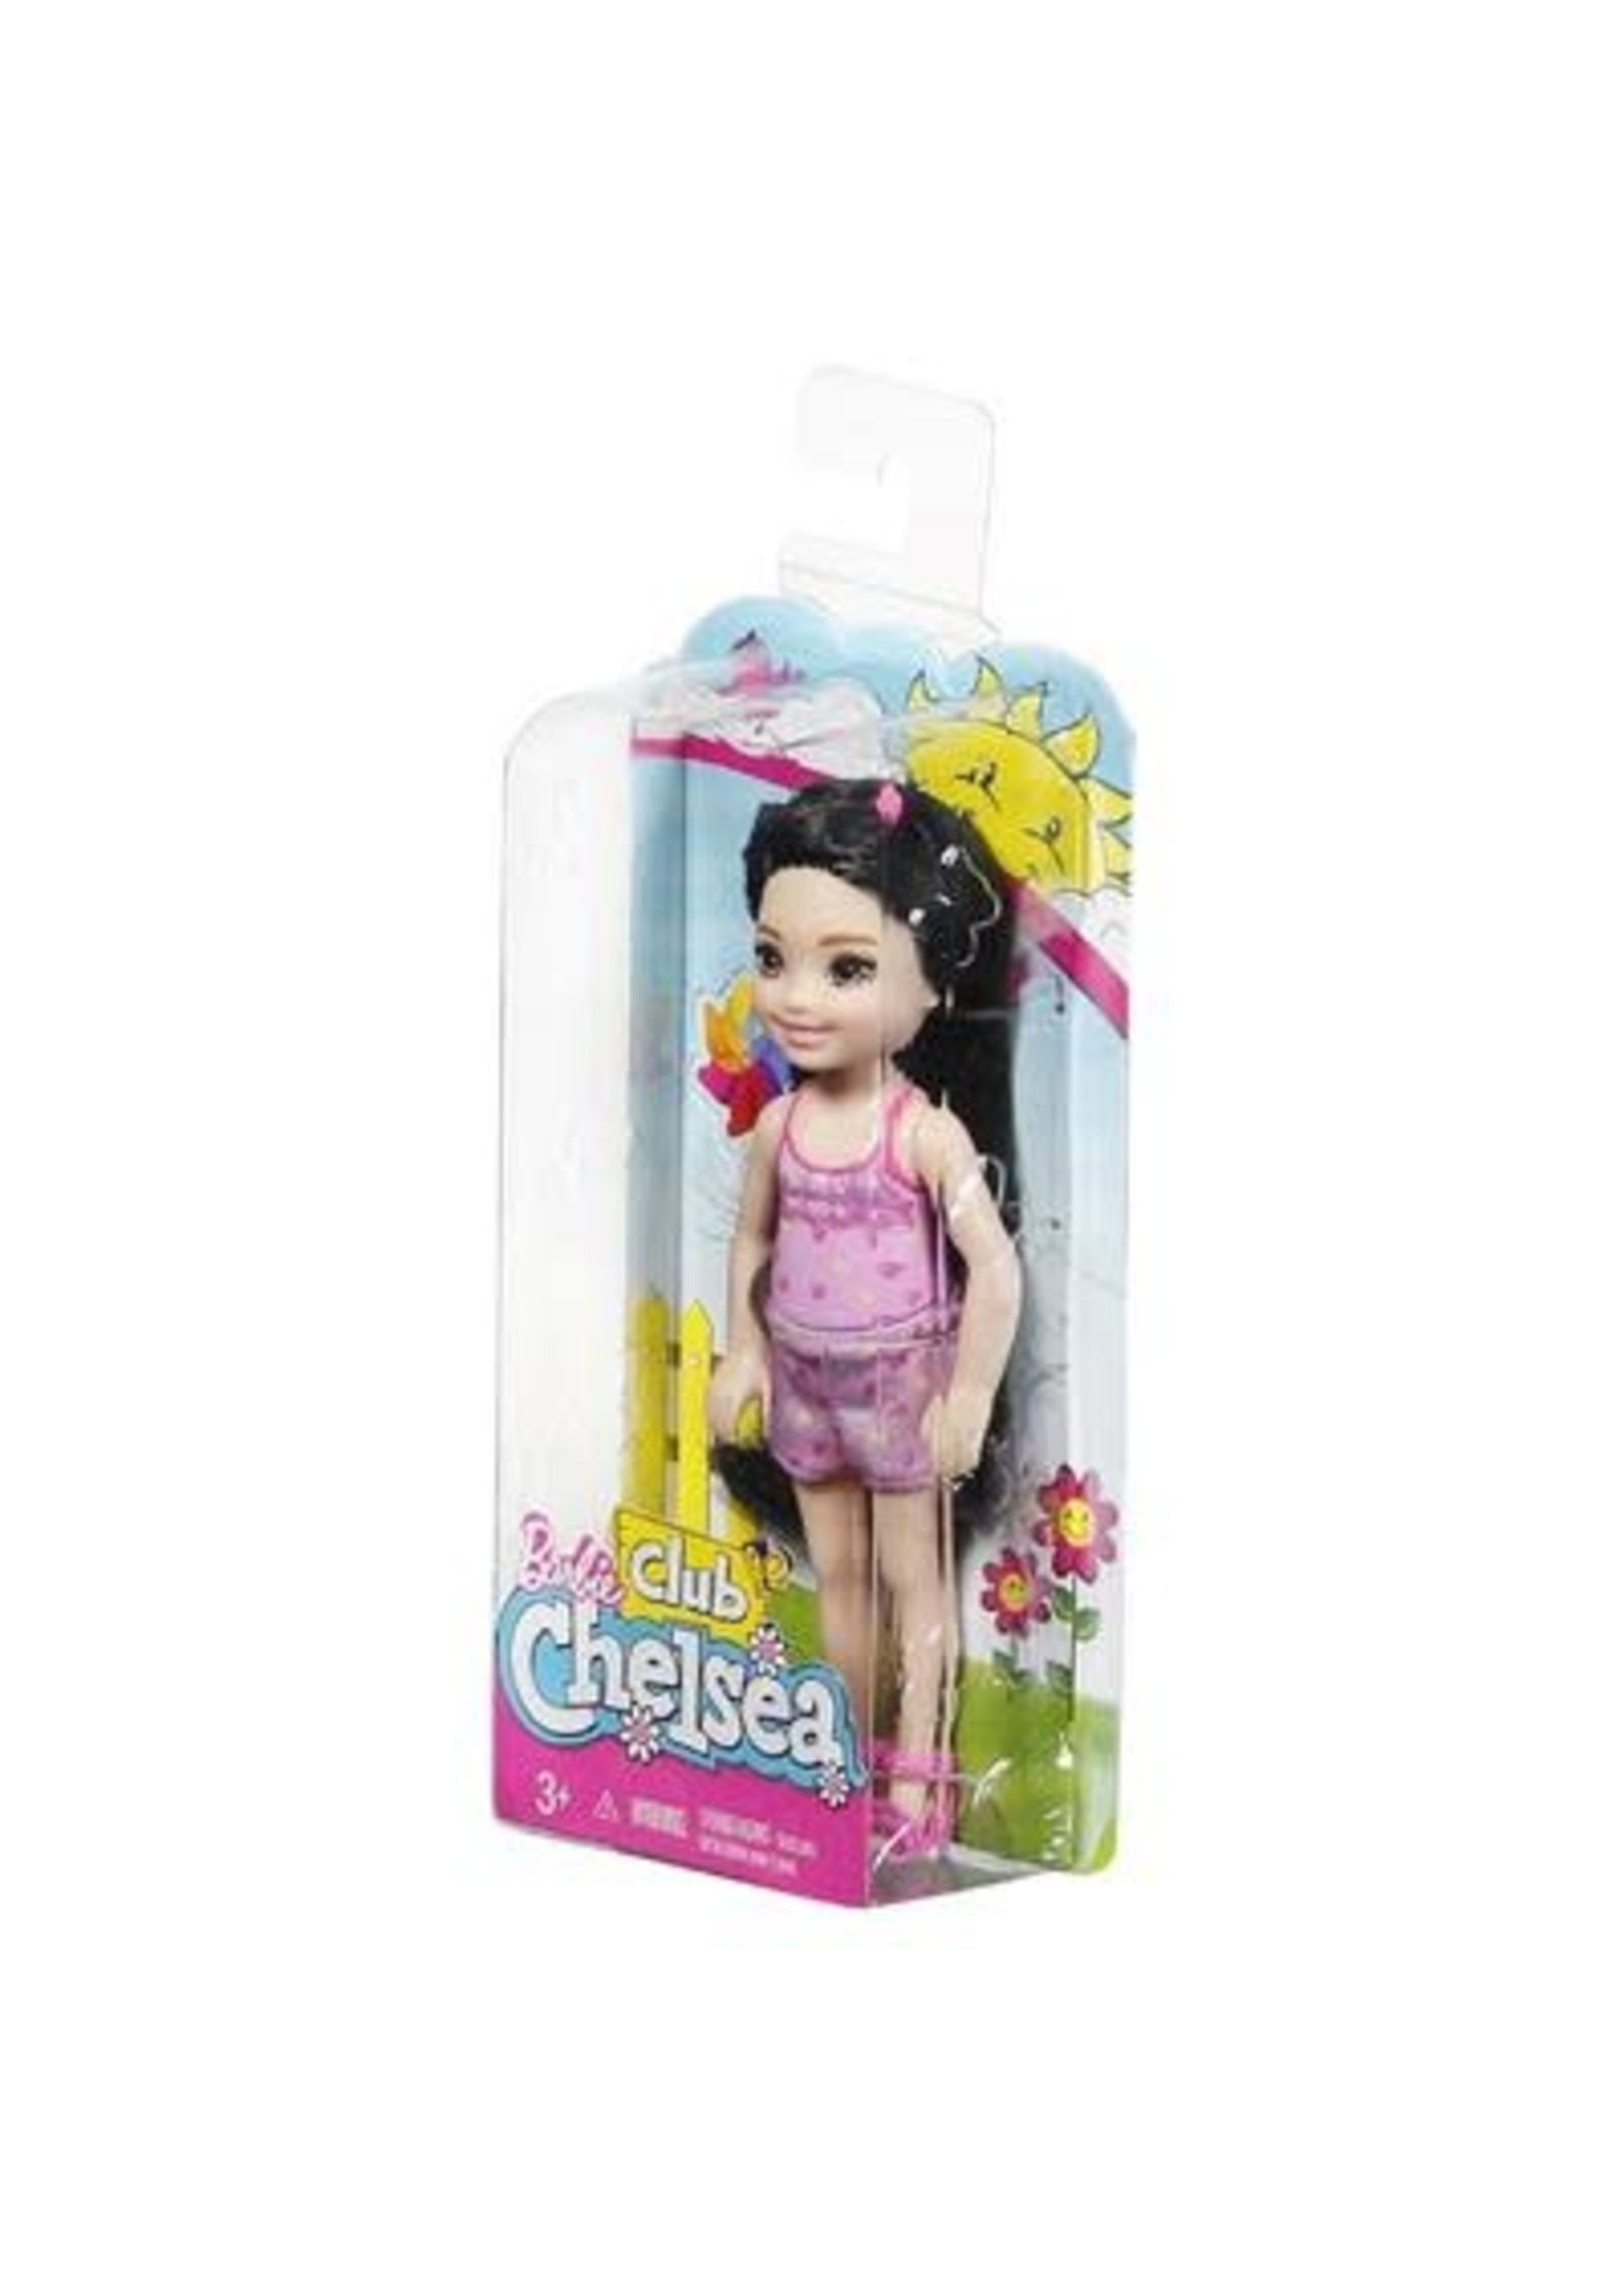 Barbie club Chelsea pop